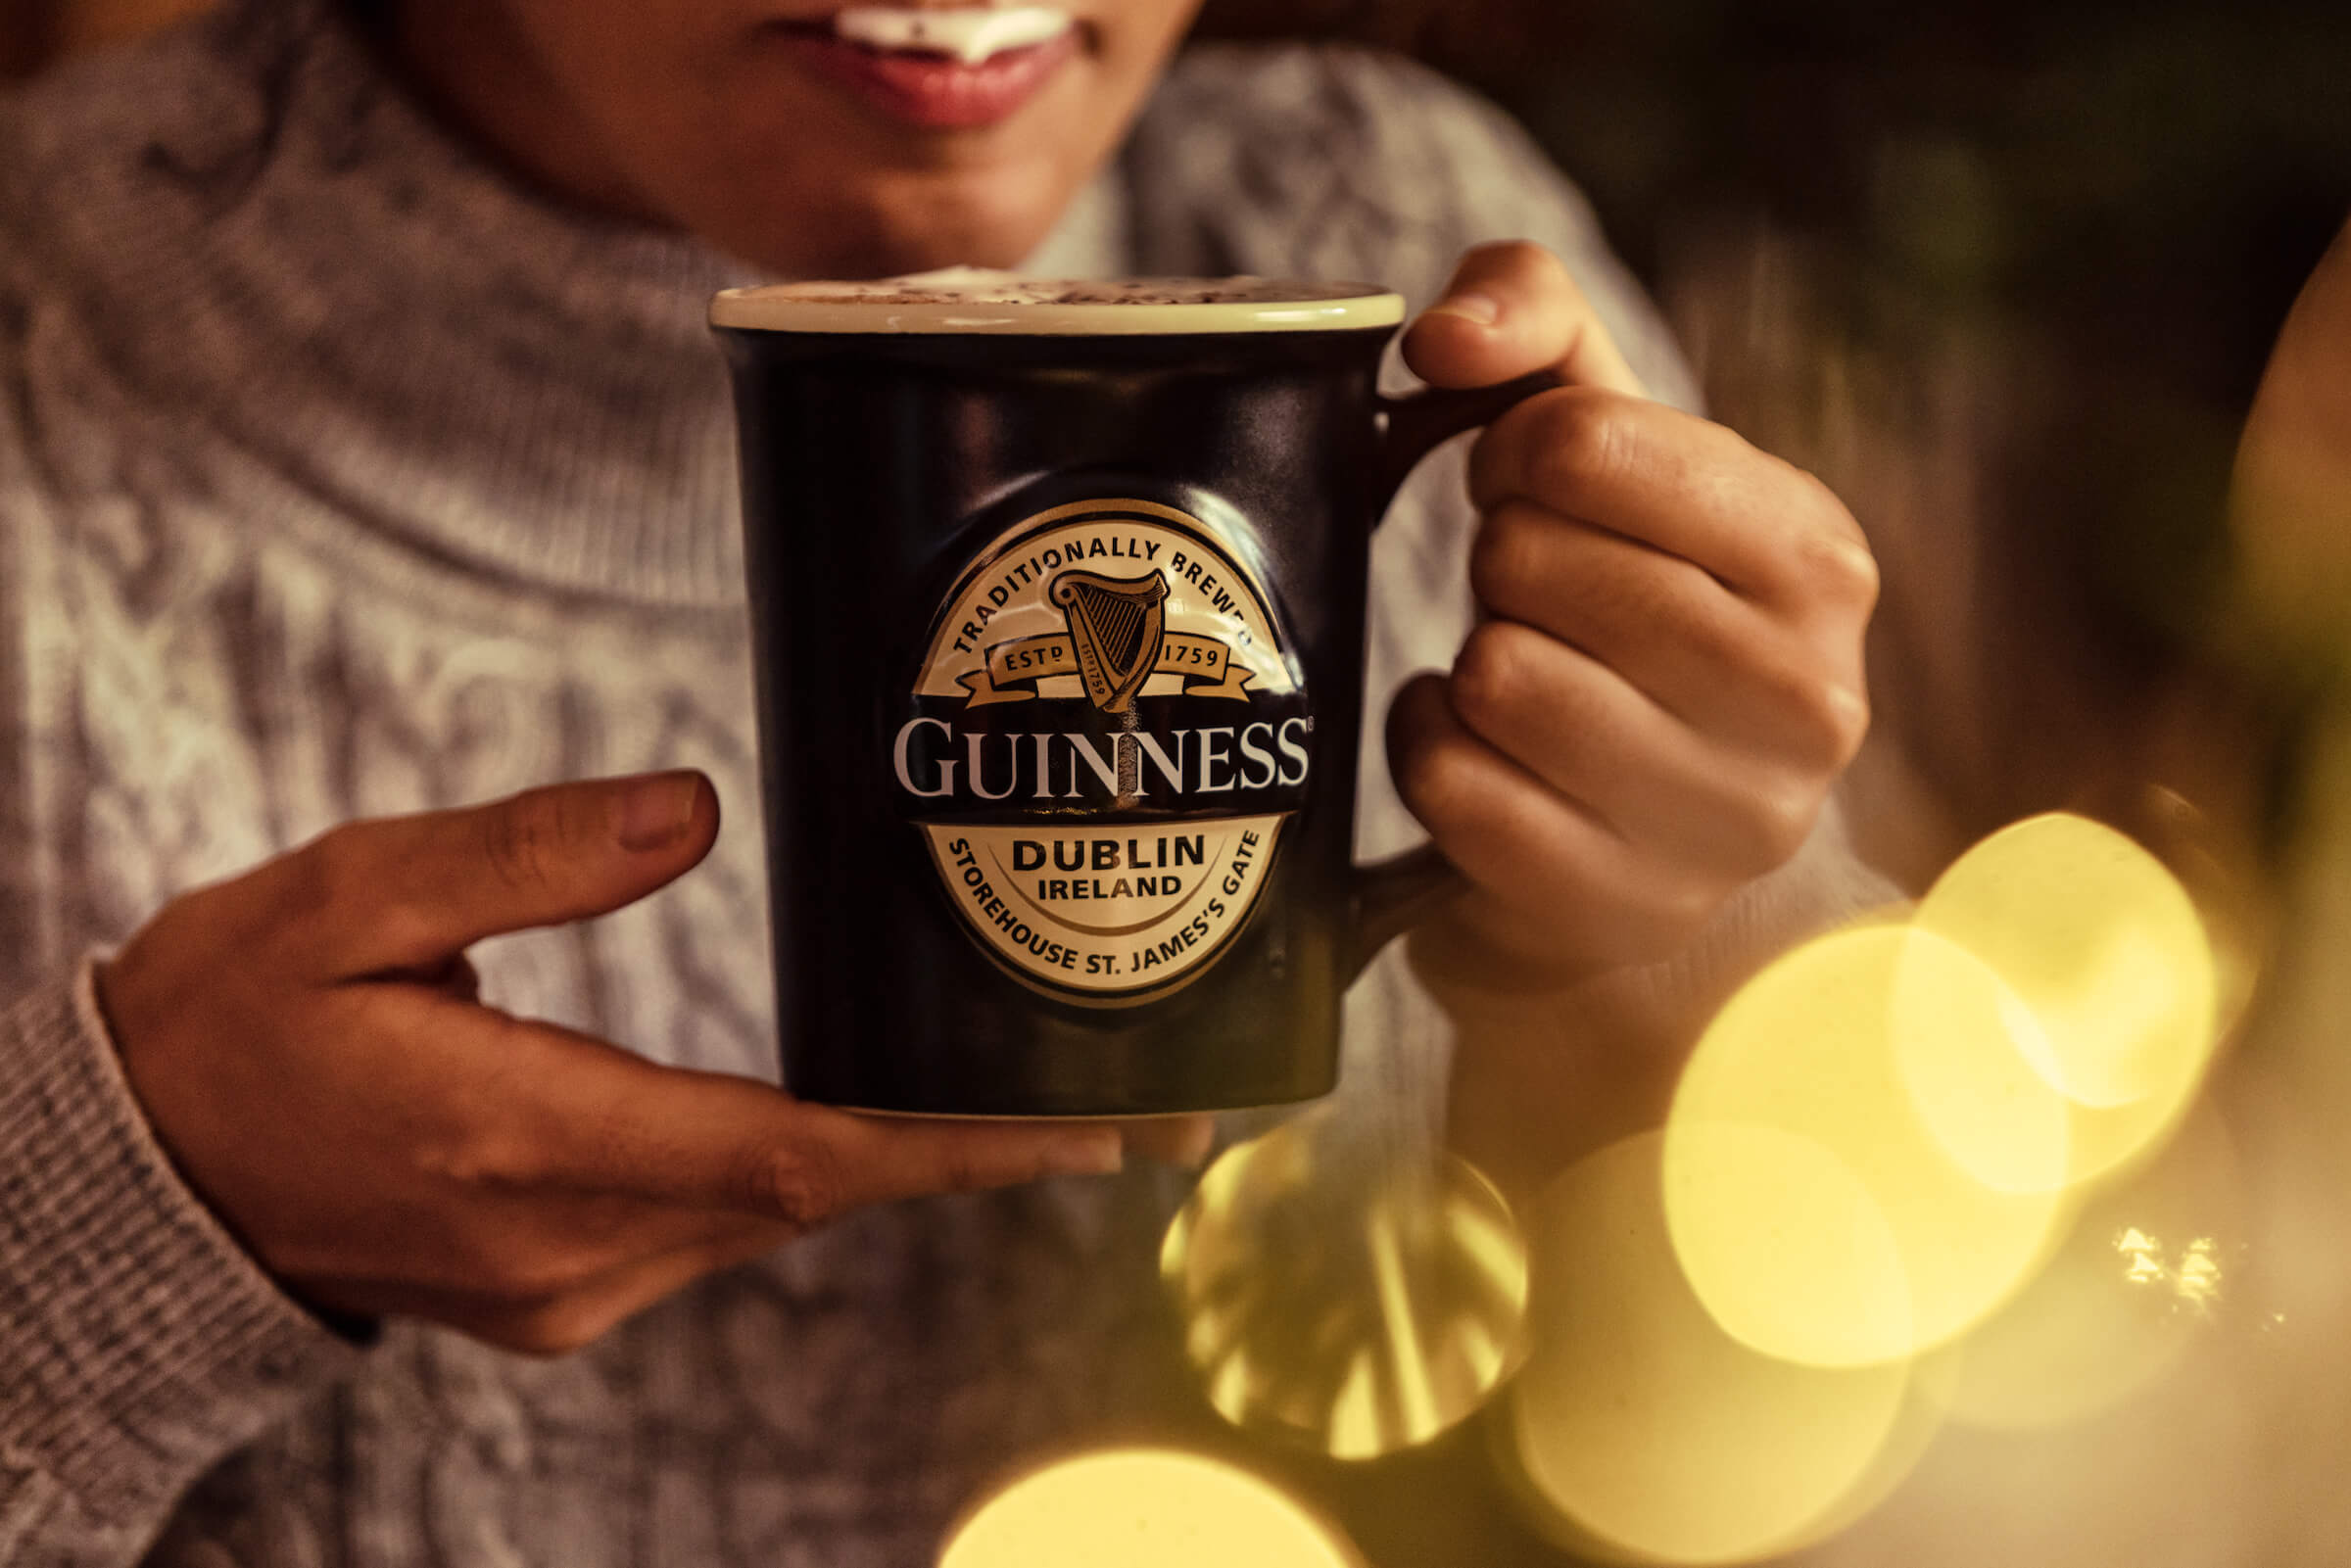 Guinness Glasses for Sale – Guinness Webstore US